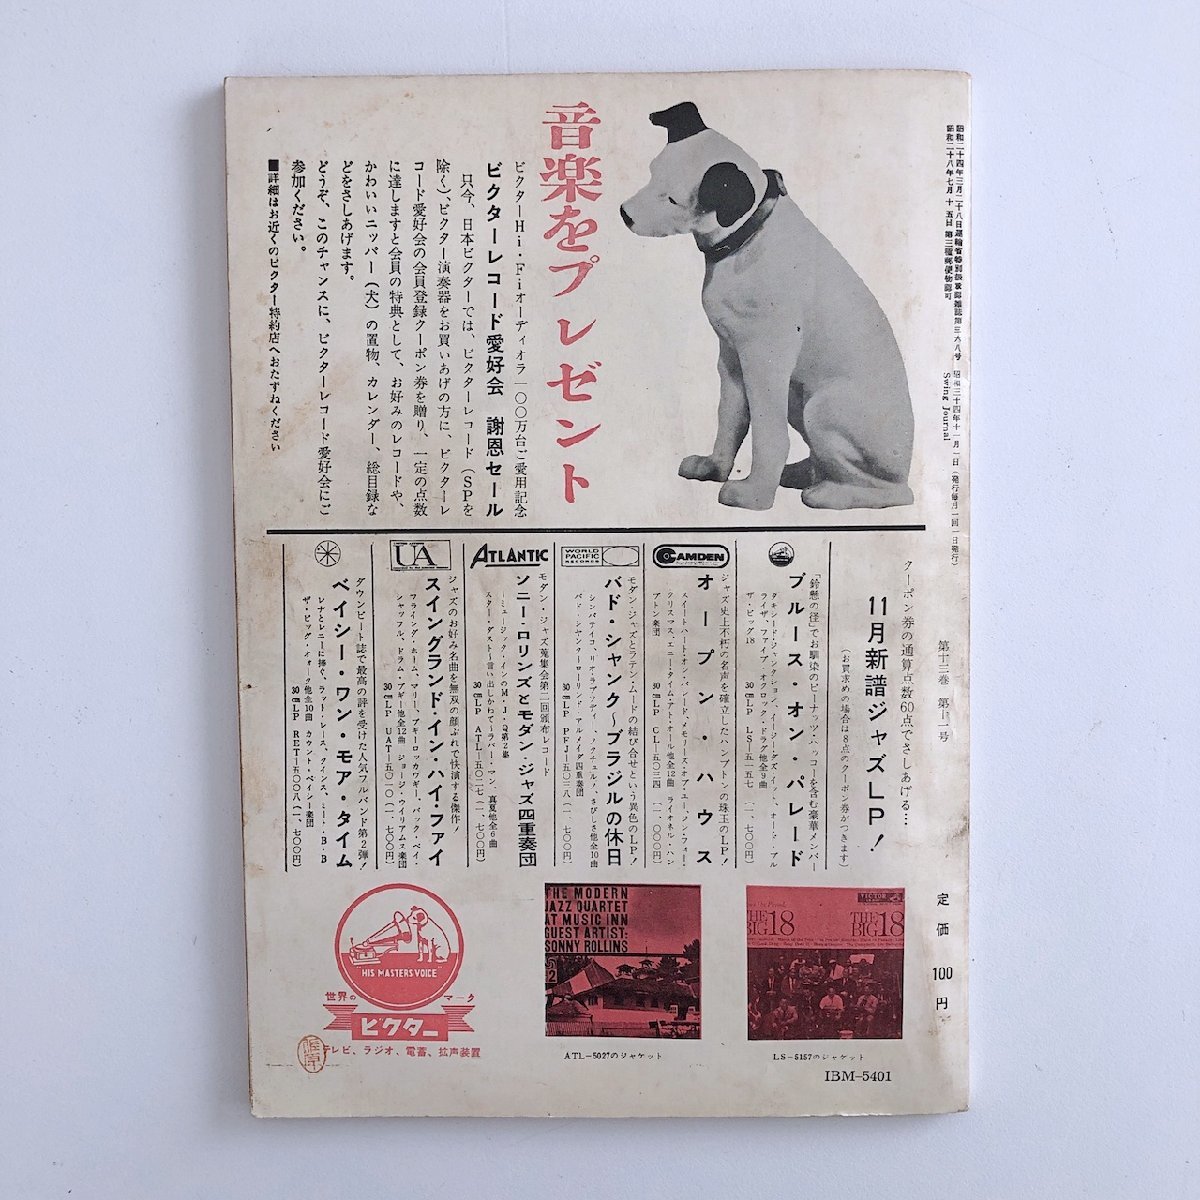 スイング・ジャーナル / Swing Journal / 1959年 11号 / ソニー・ロリンズ批判 / 日本のビック・バンド・ジャズ / ※ハガキ切取跡あり 3D6C_画像2